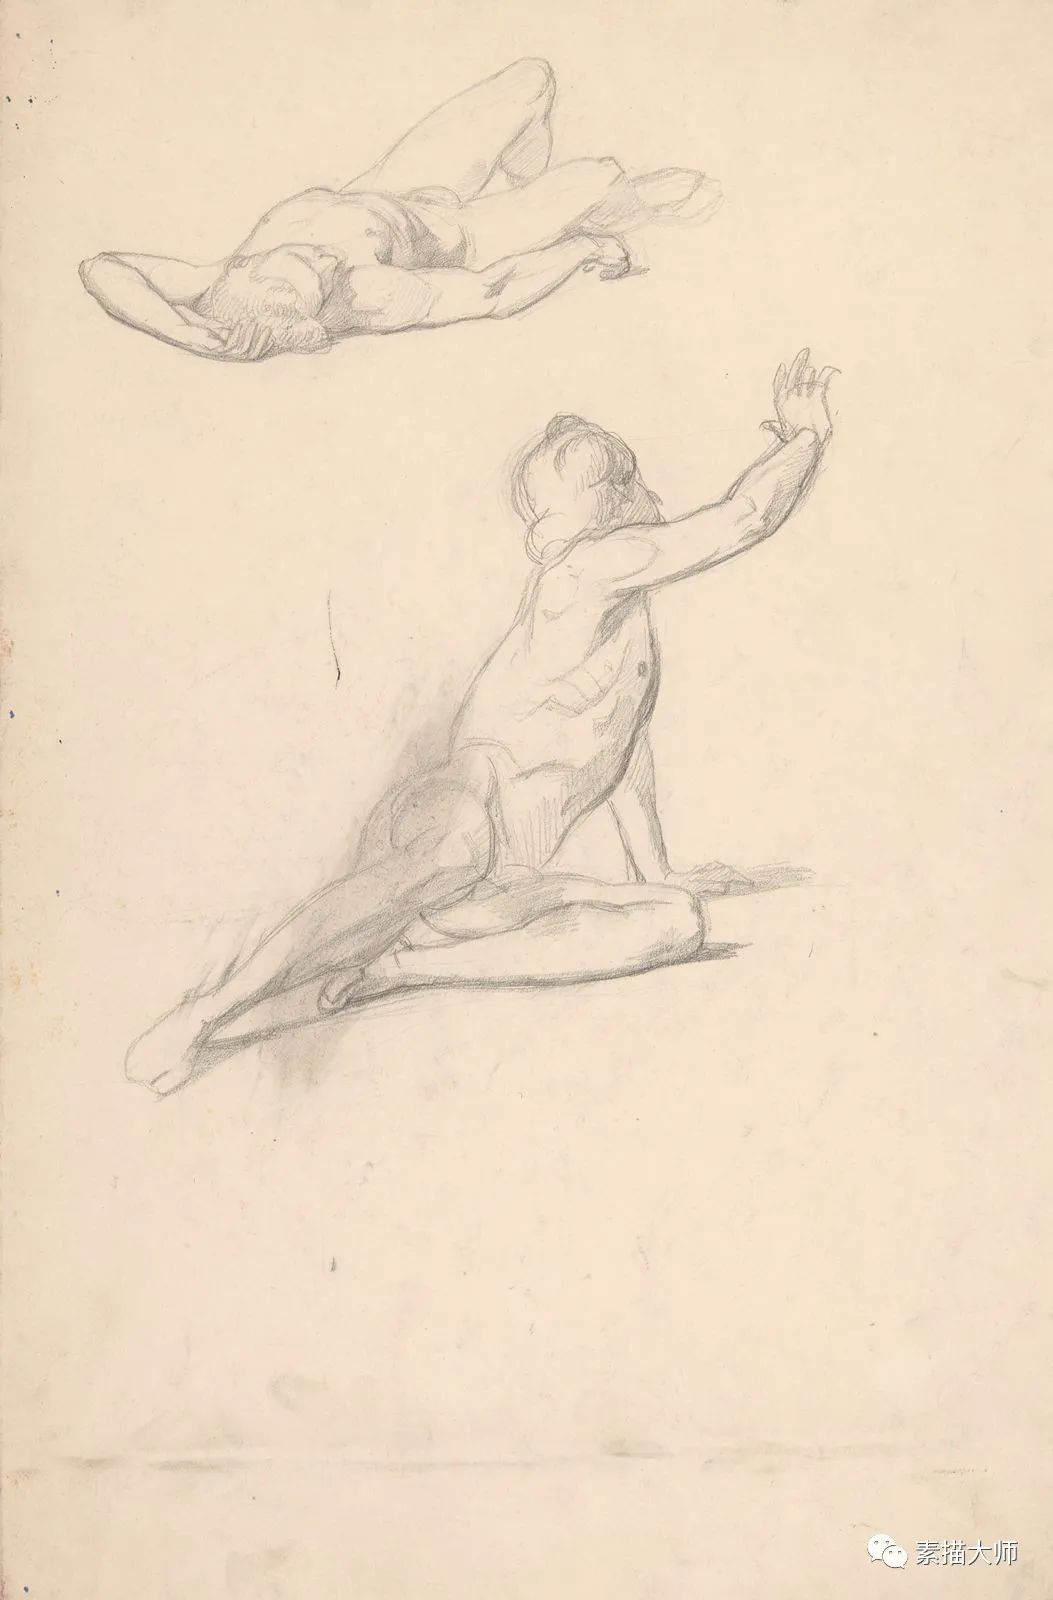 人体素描，19世纪波兰画家约瑟夫·西姆勒的作品